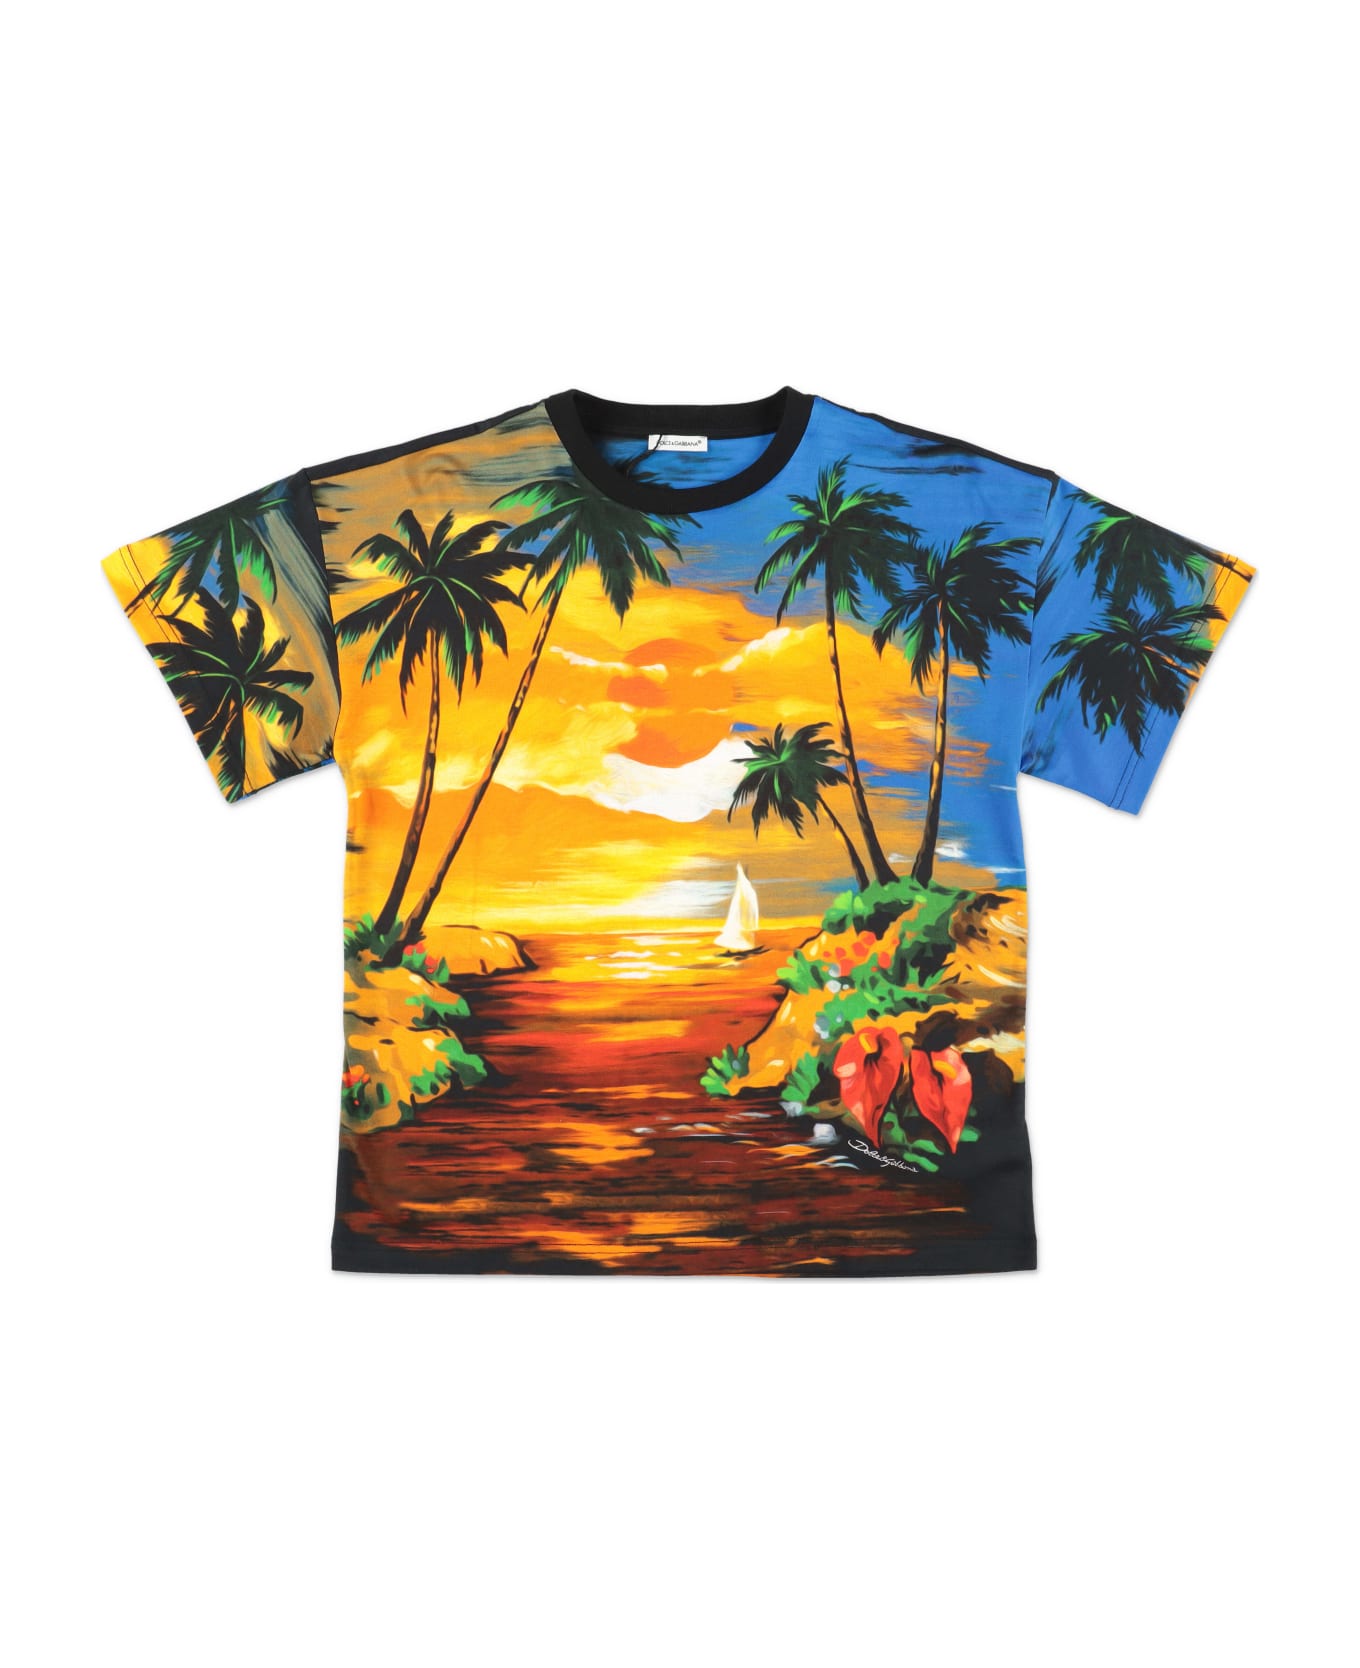 Dolce & Gabbana T-shirt Stampata In Tema Hawaiiin Jersey Di Cotone Bambino - Stampa